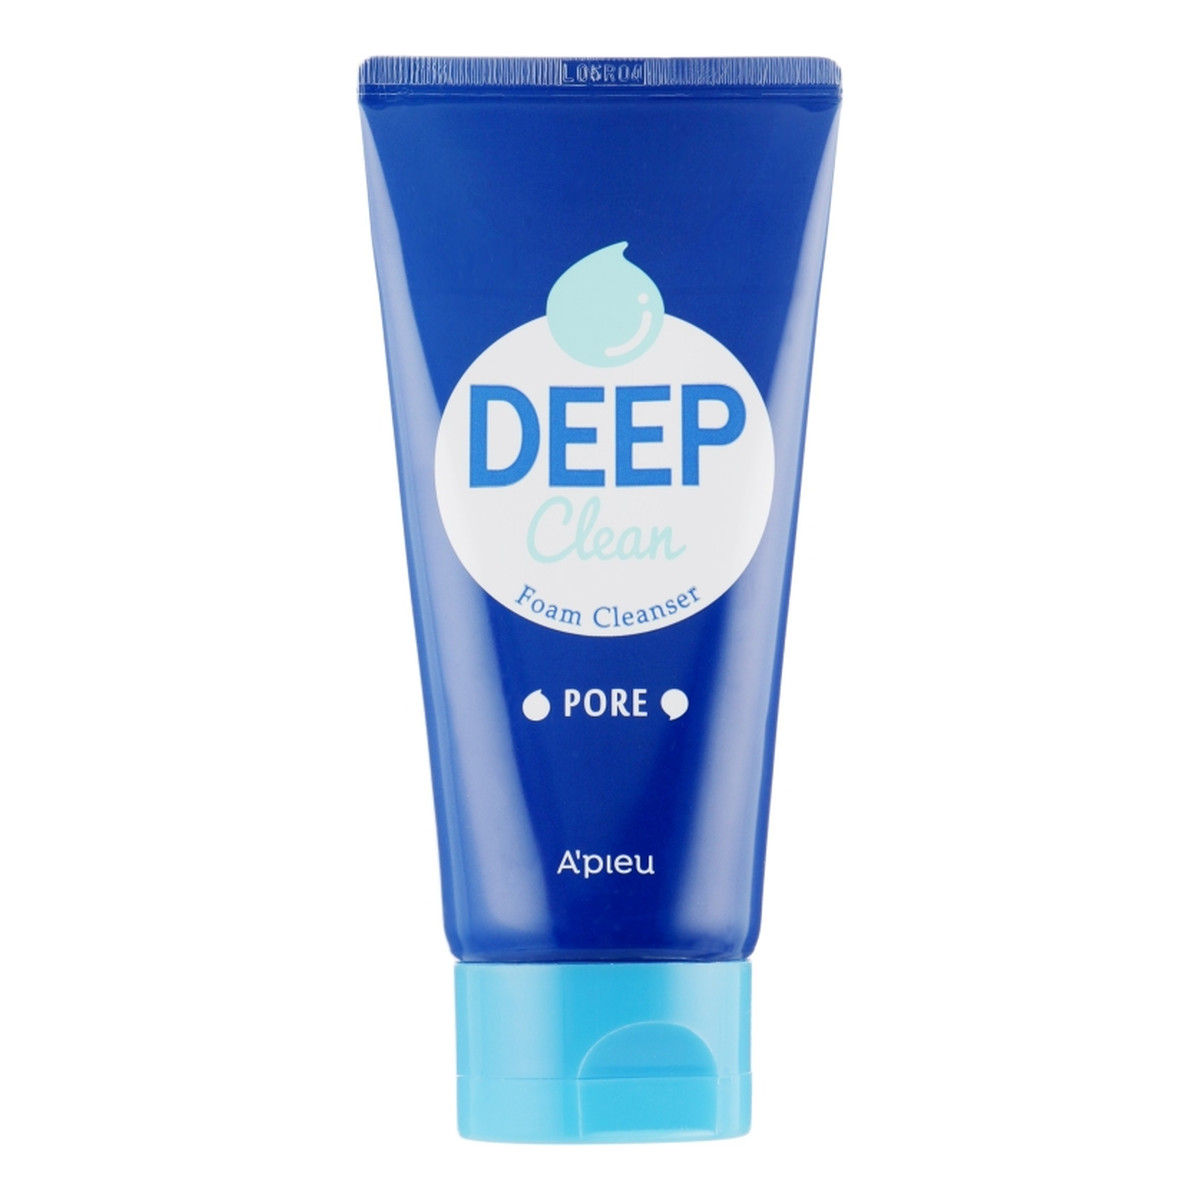 A'Pieu Deep Clean Foam Cleanser (Pore) Oczyszczająca pianka do mycia twarzy 130ml